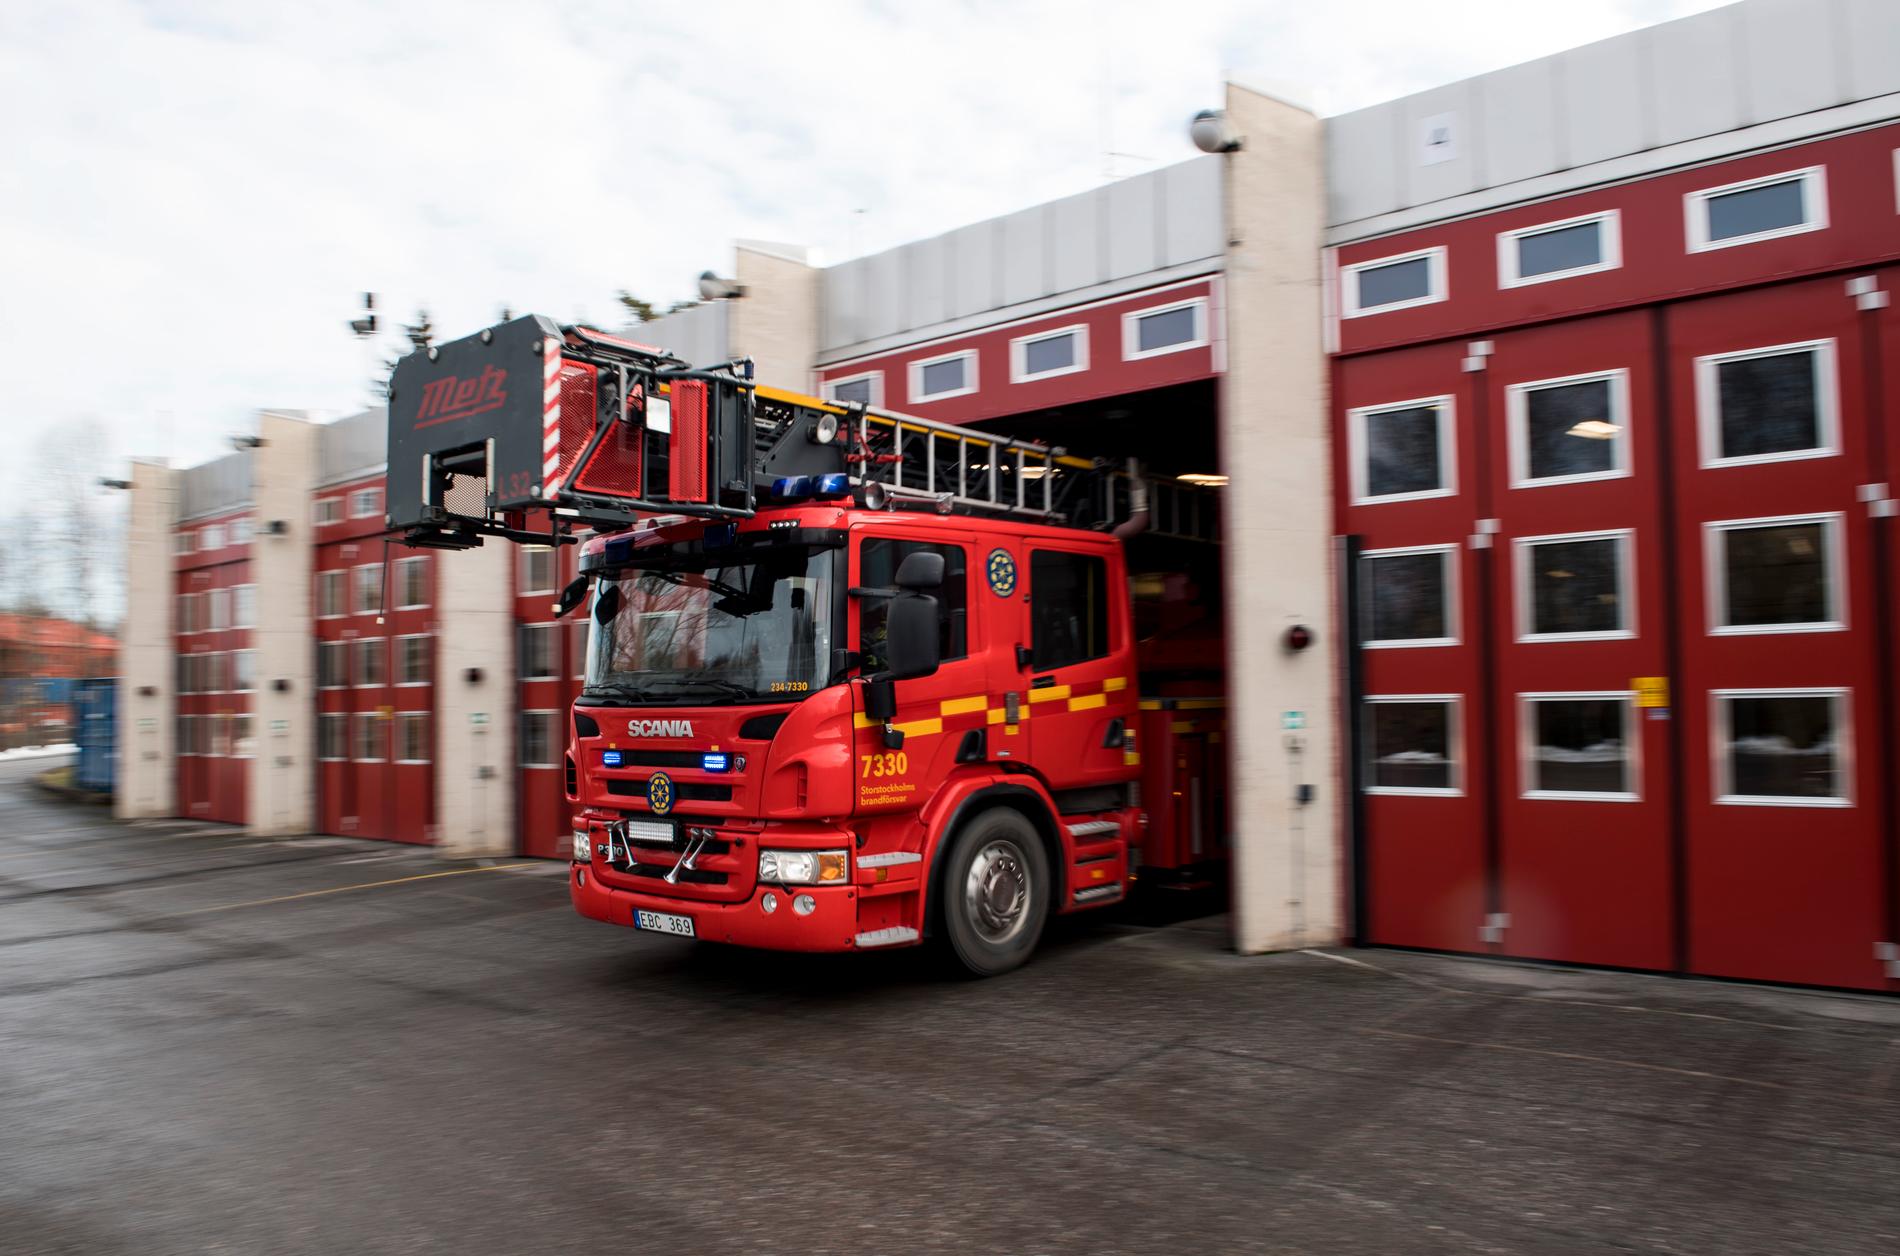 Boende i fyra trappuppgångar fick evakueras vid en brand i Vänersborg. En person fördes till sjukhus med rökskador. Arkivbild.